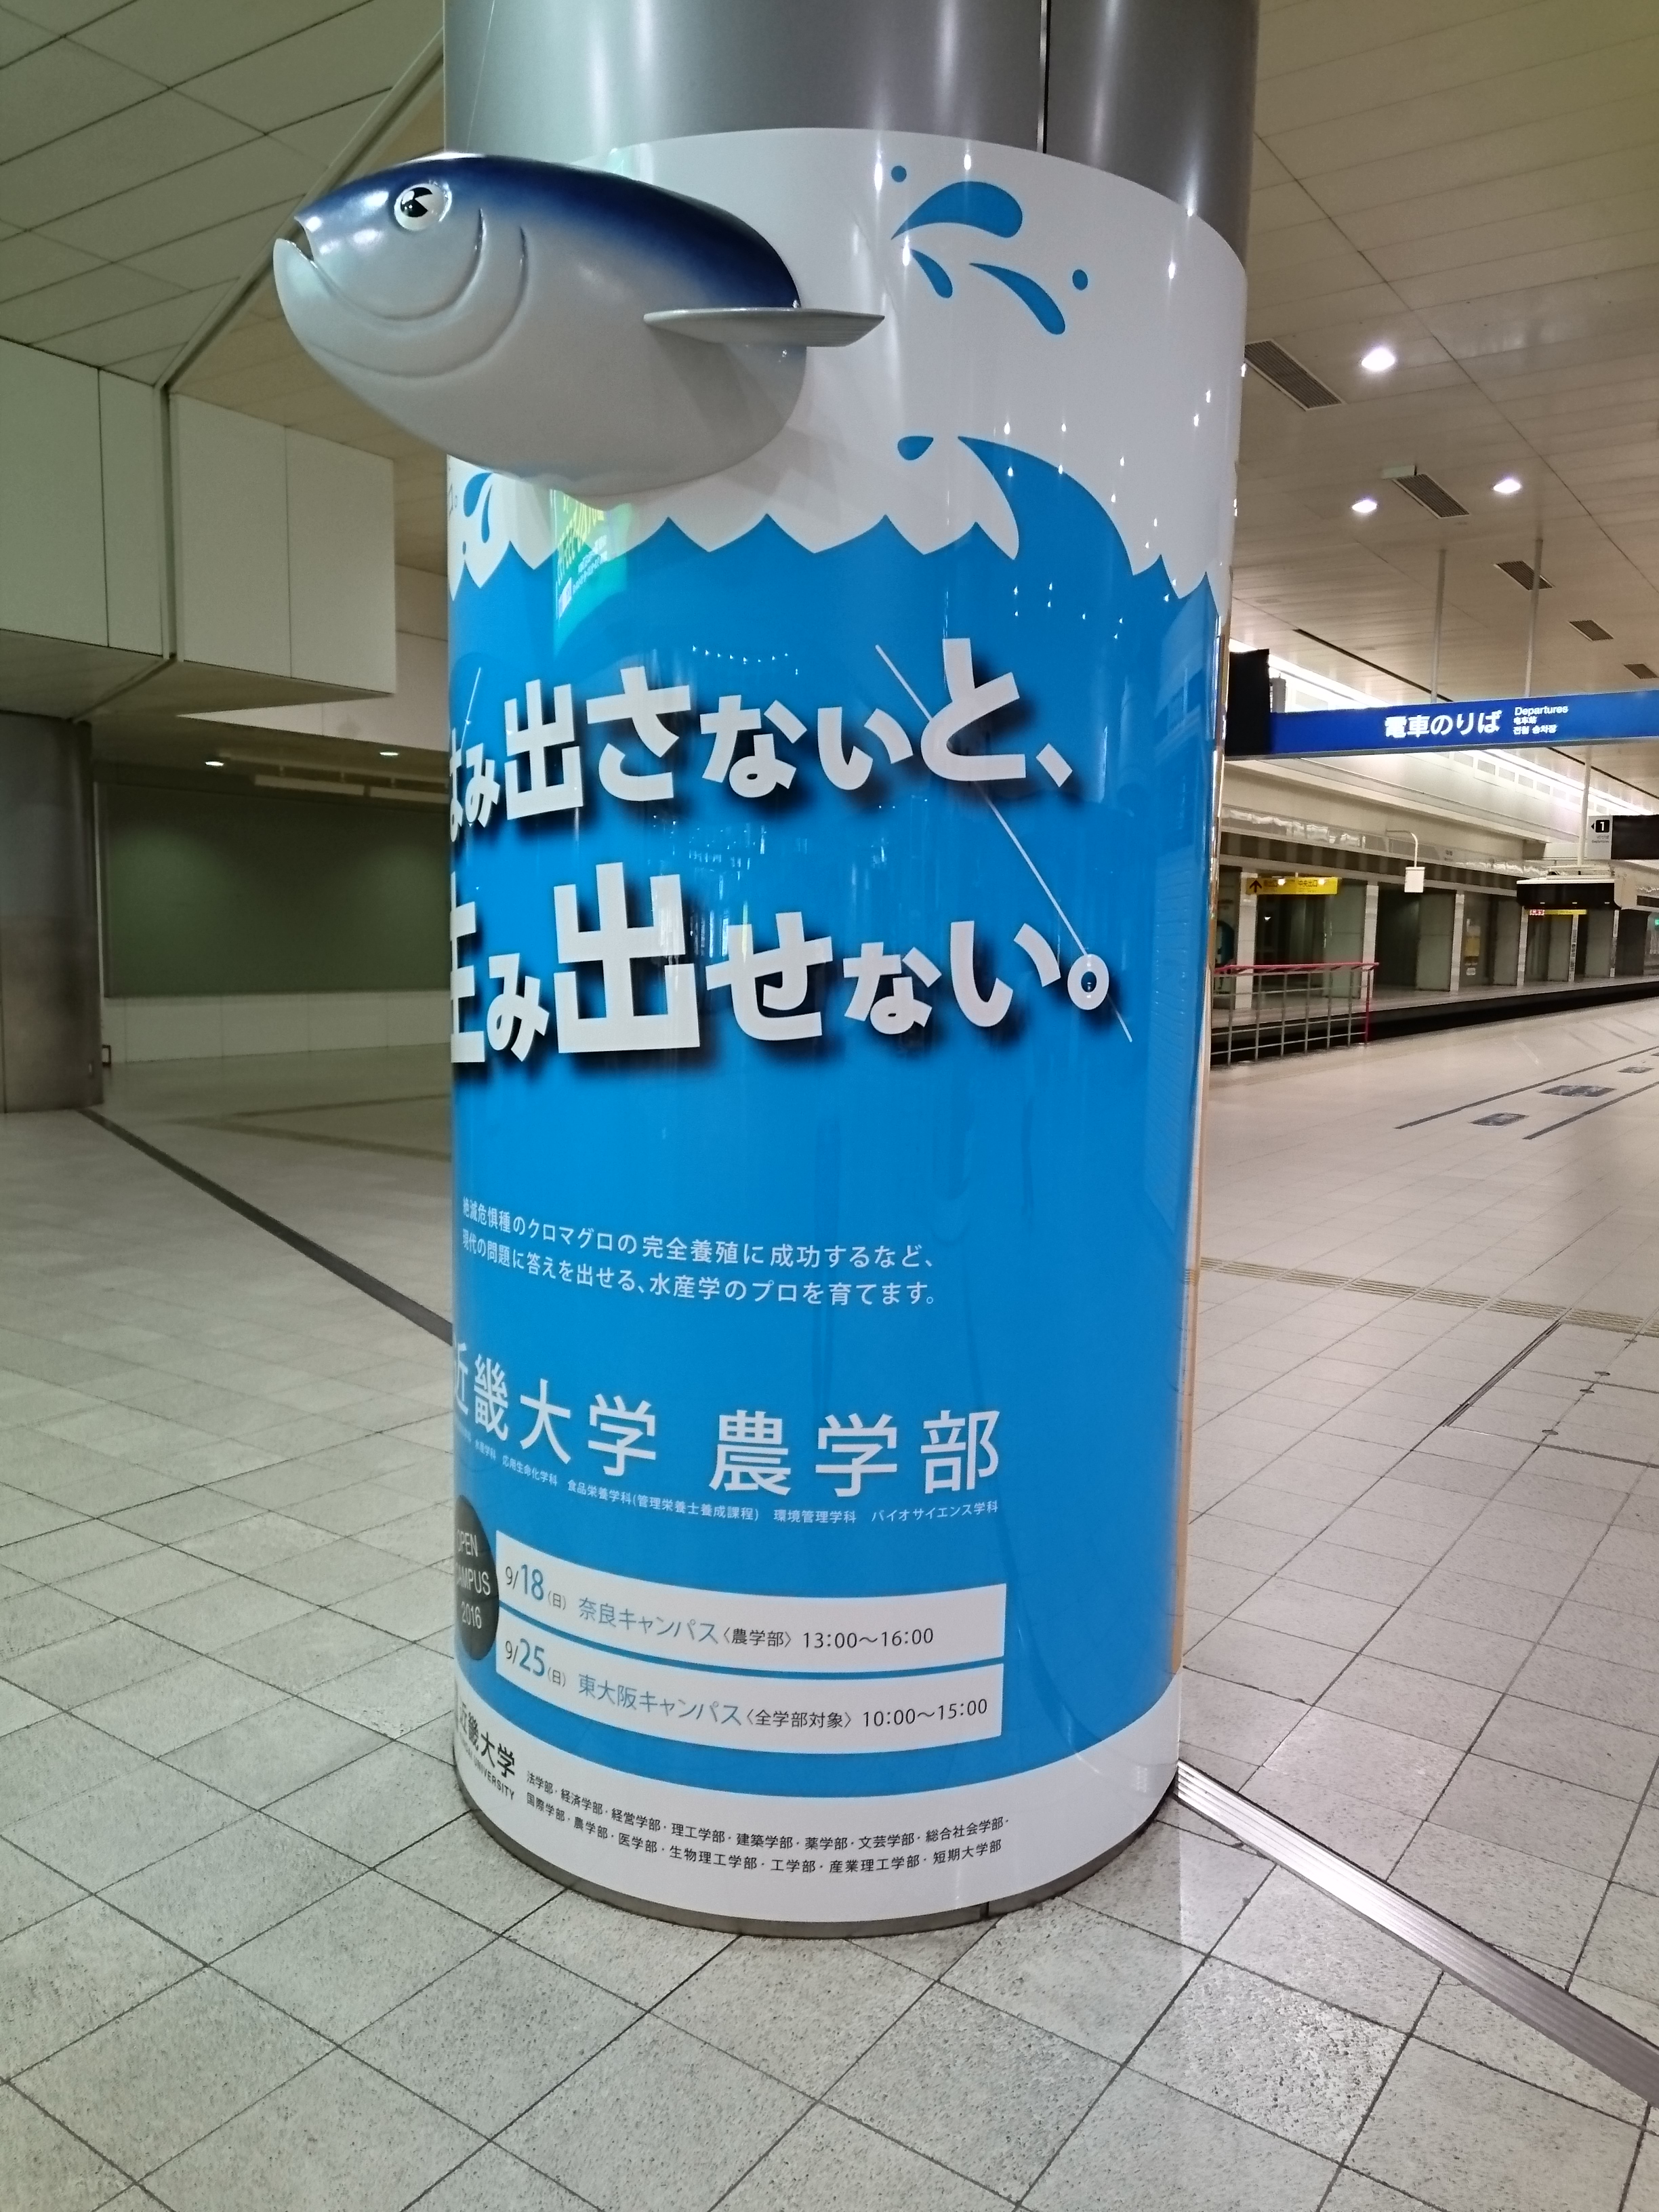 九州初 9月日まで 西鉄福岡 天神 駅で 飛び出る 柱巻き広告が掲出されています 近畿大学 農学部のプレスリリース